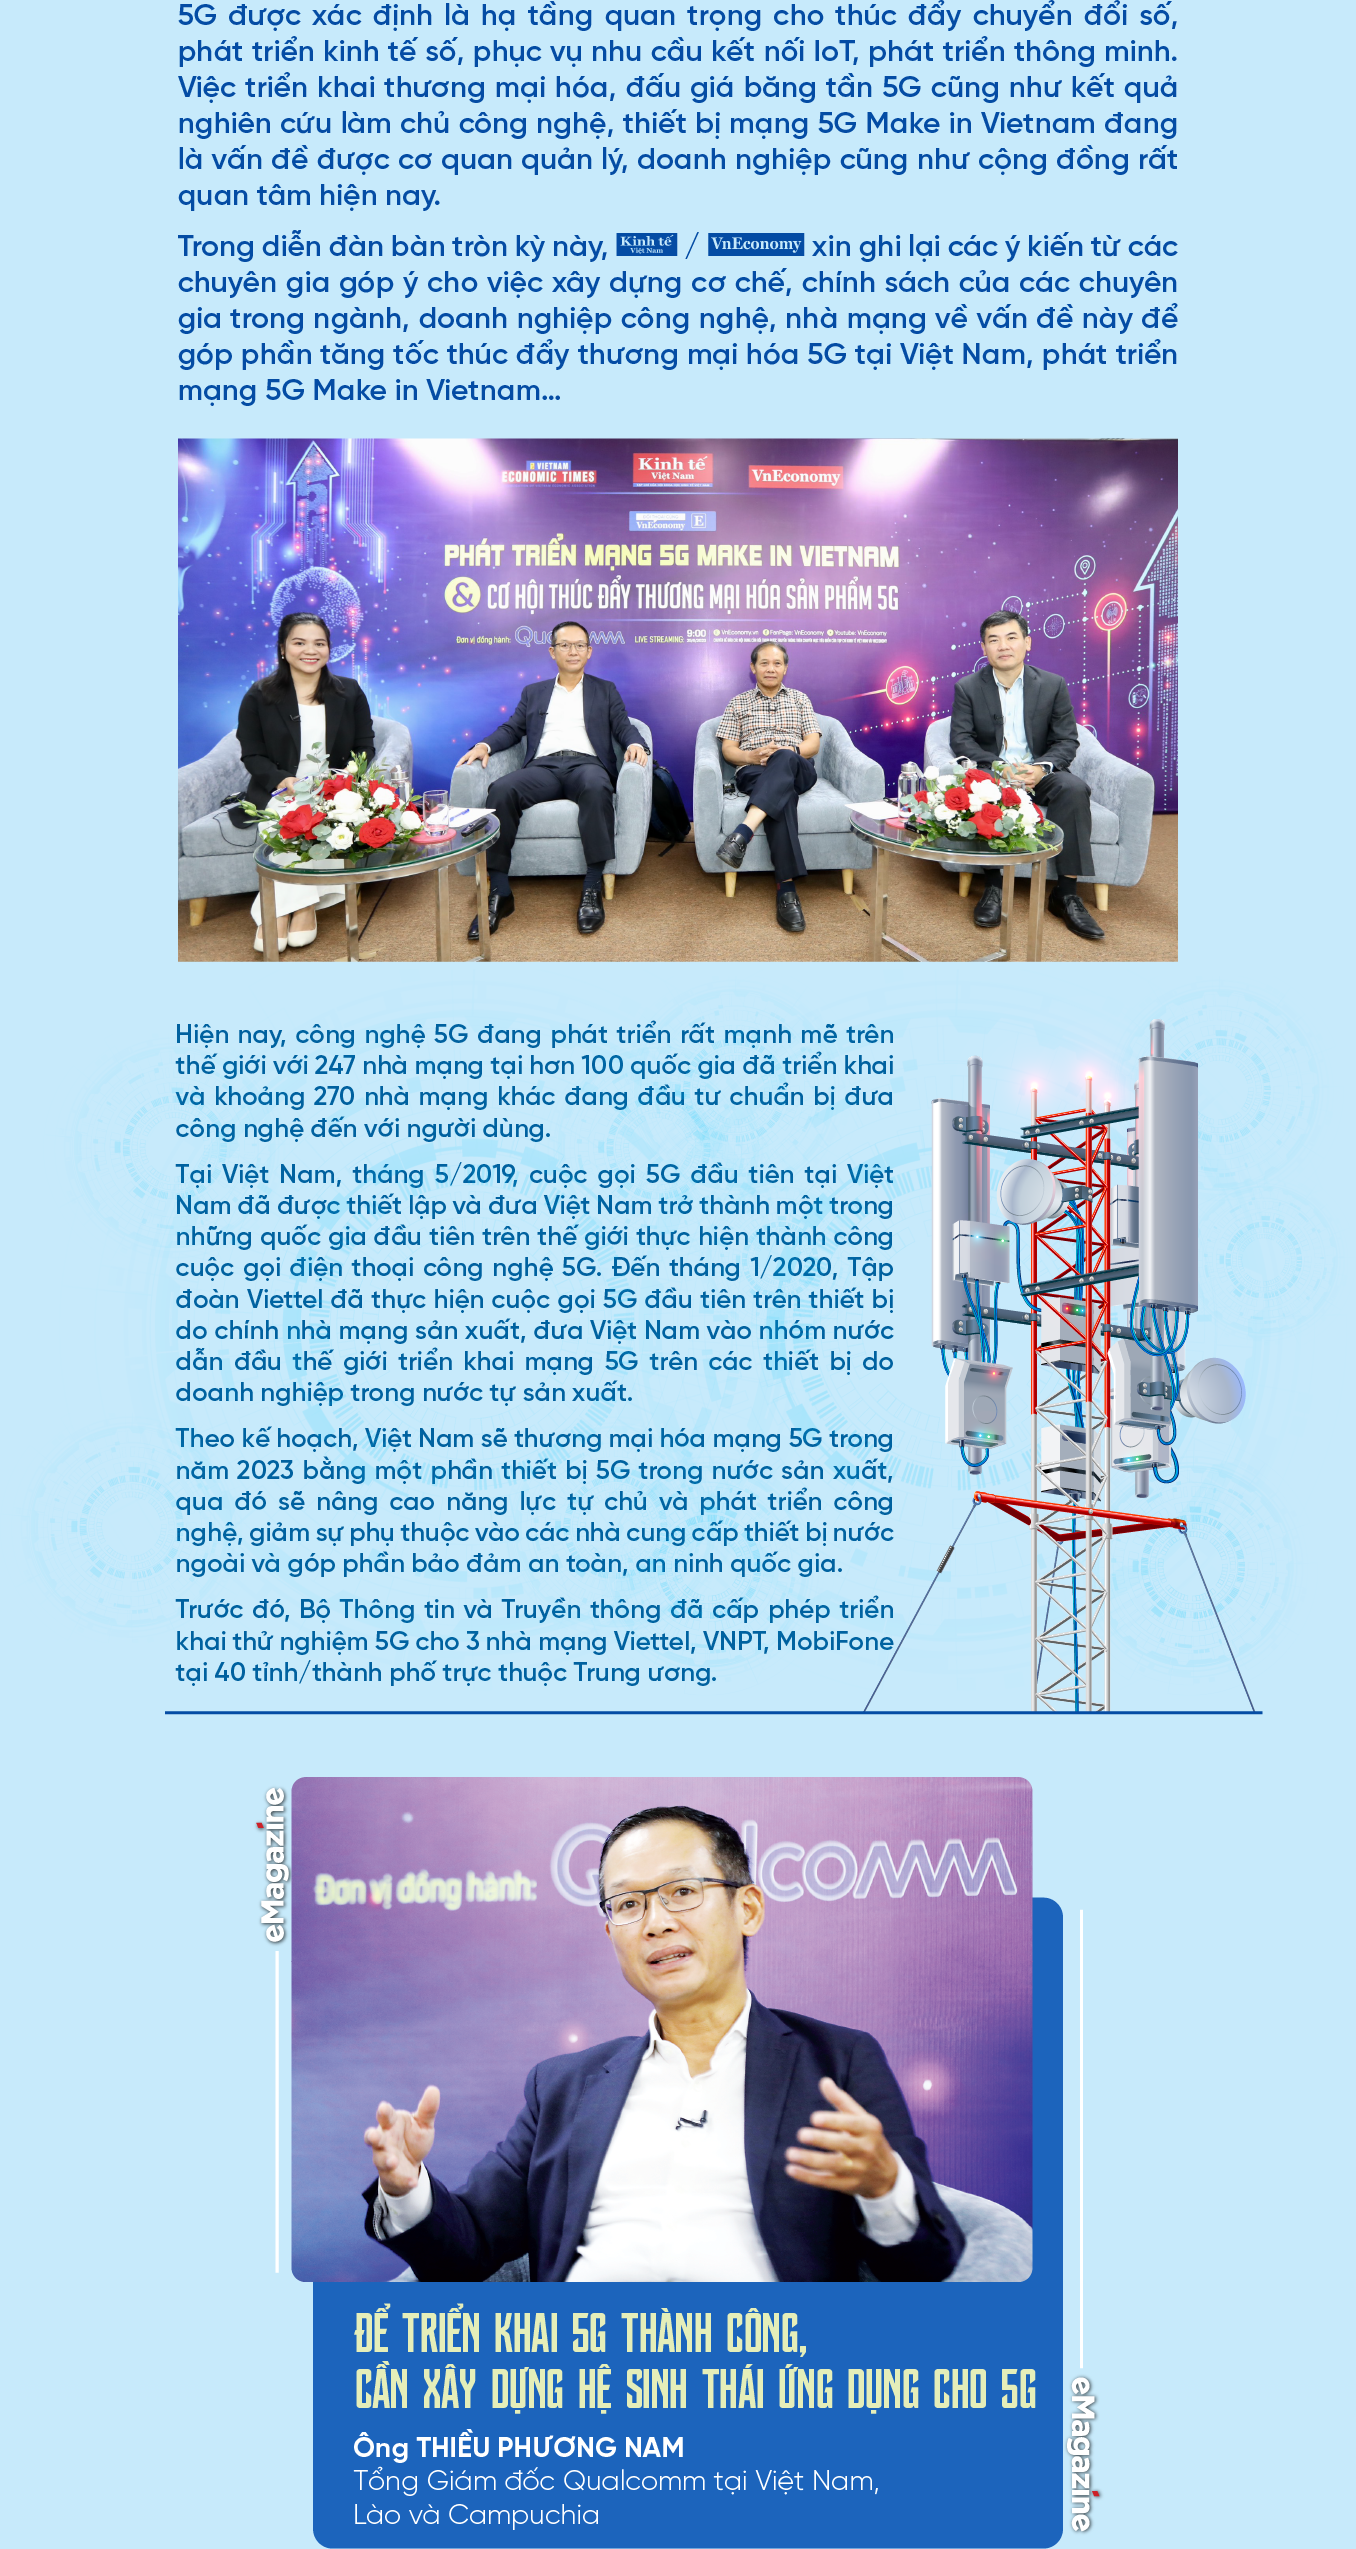 Tăng tốc thương mại hóa, phát triển mạng 5G “Make in Vietnam” - Ảnh 2